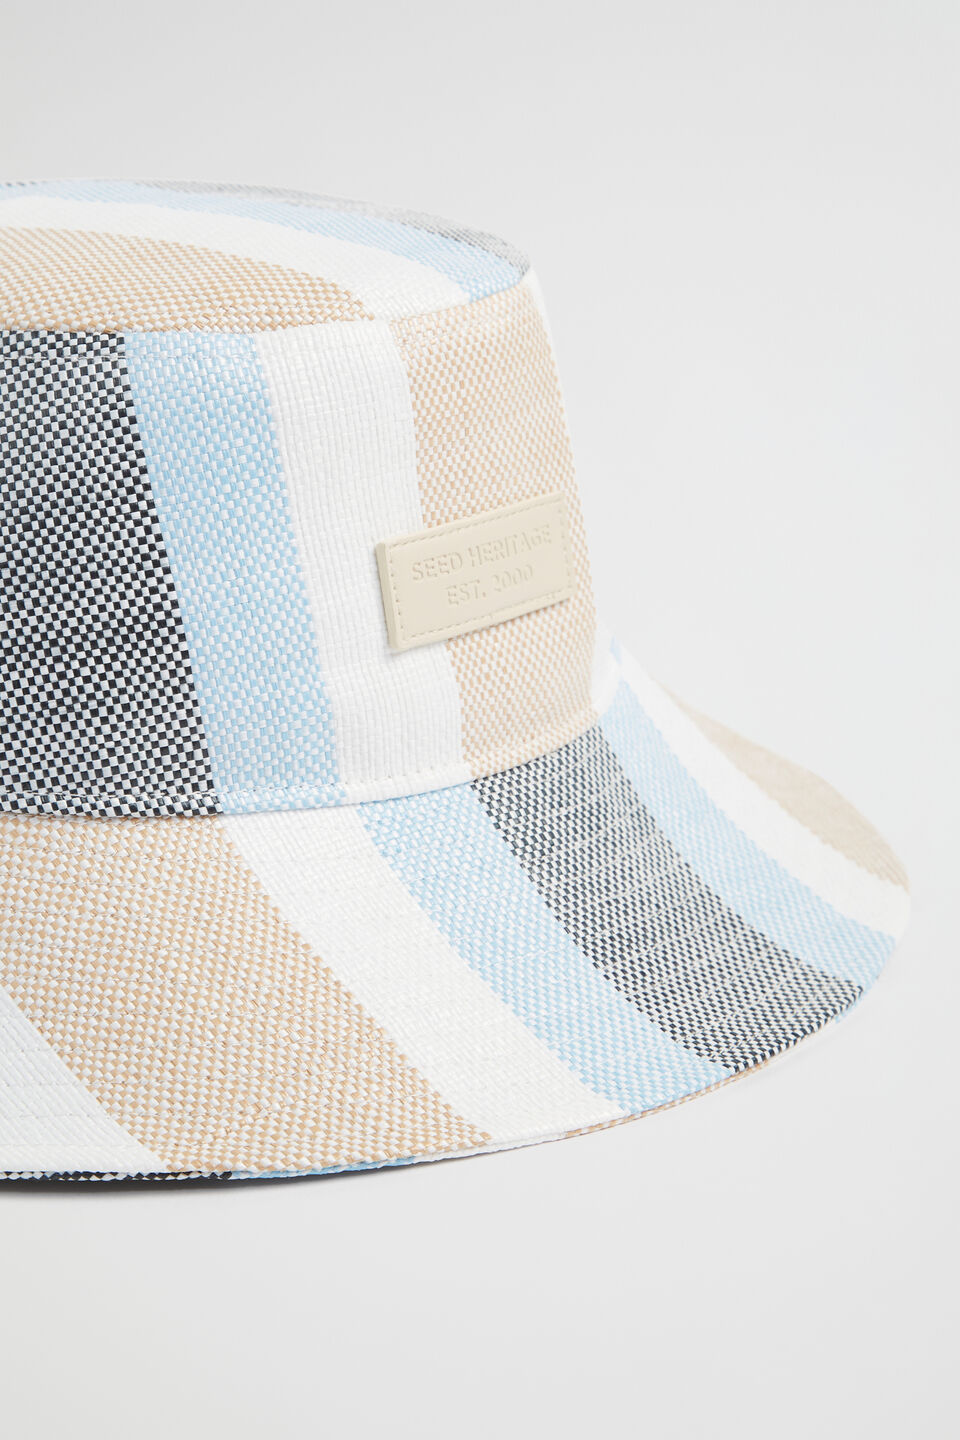 Stripe Bucket Hat  Bluebell Multi